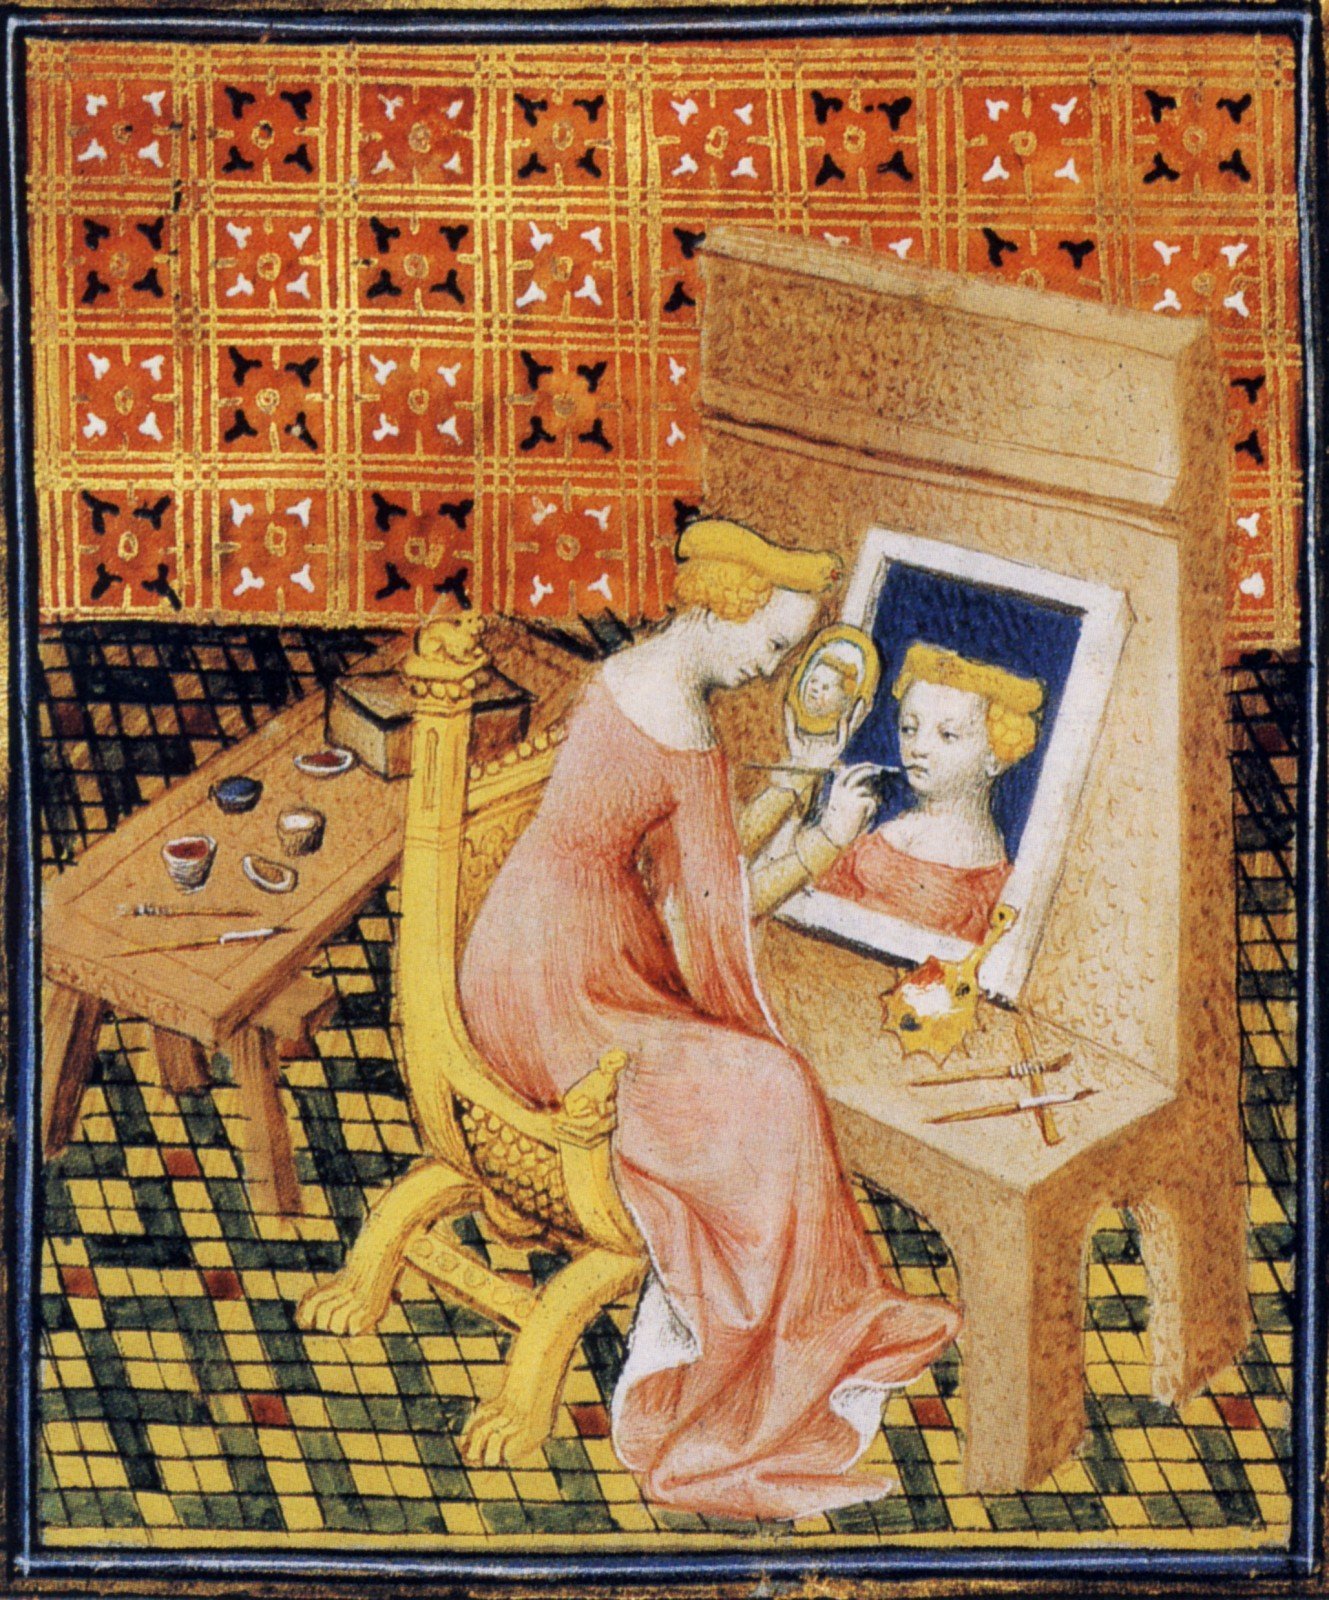 15th century illustration from Giovanni Boccaccio's "De Mulieribus Claris". In the collection of the Bibliothèque nationale de France